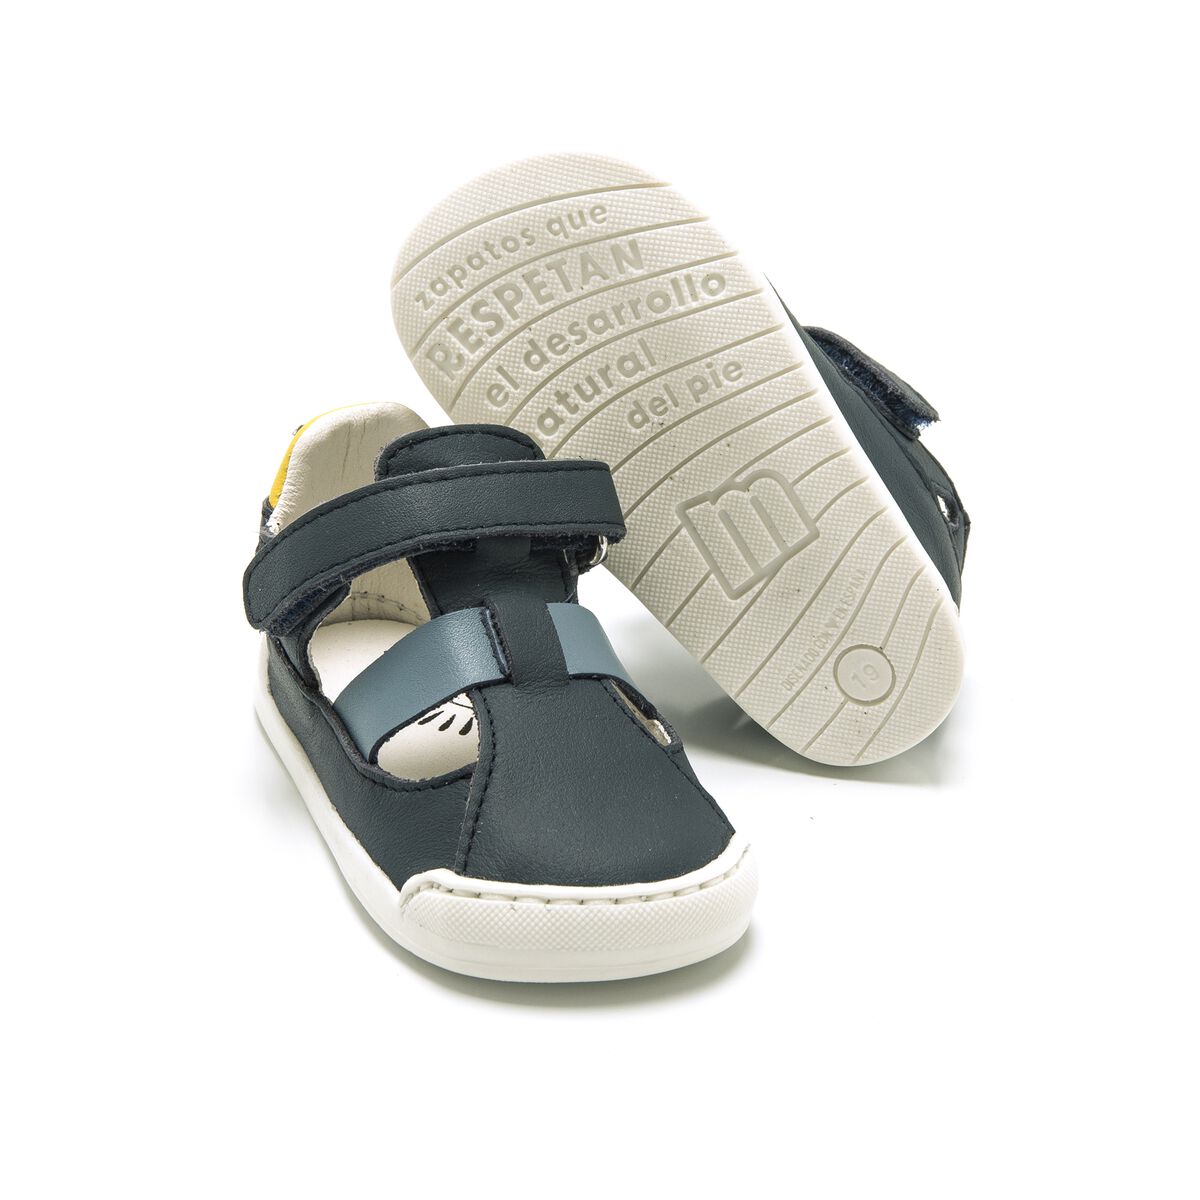 Sandalias de Nino modelo FREE BABY de MTNG image number 3